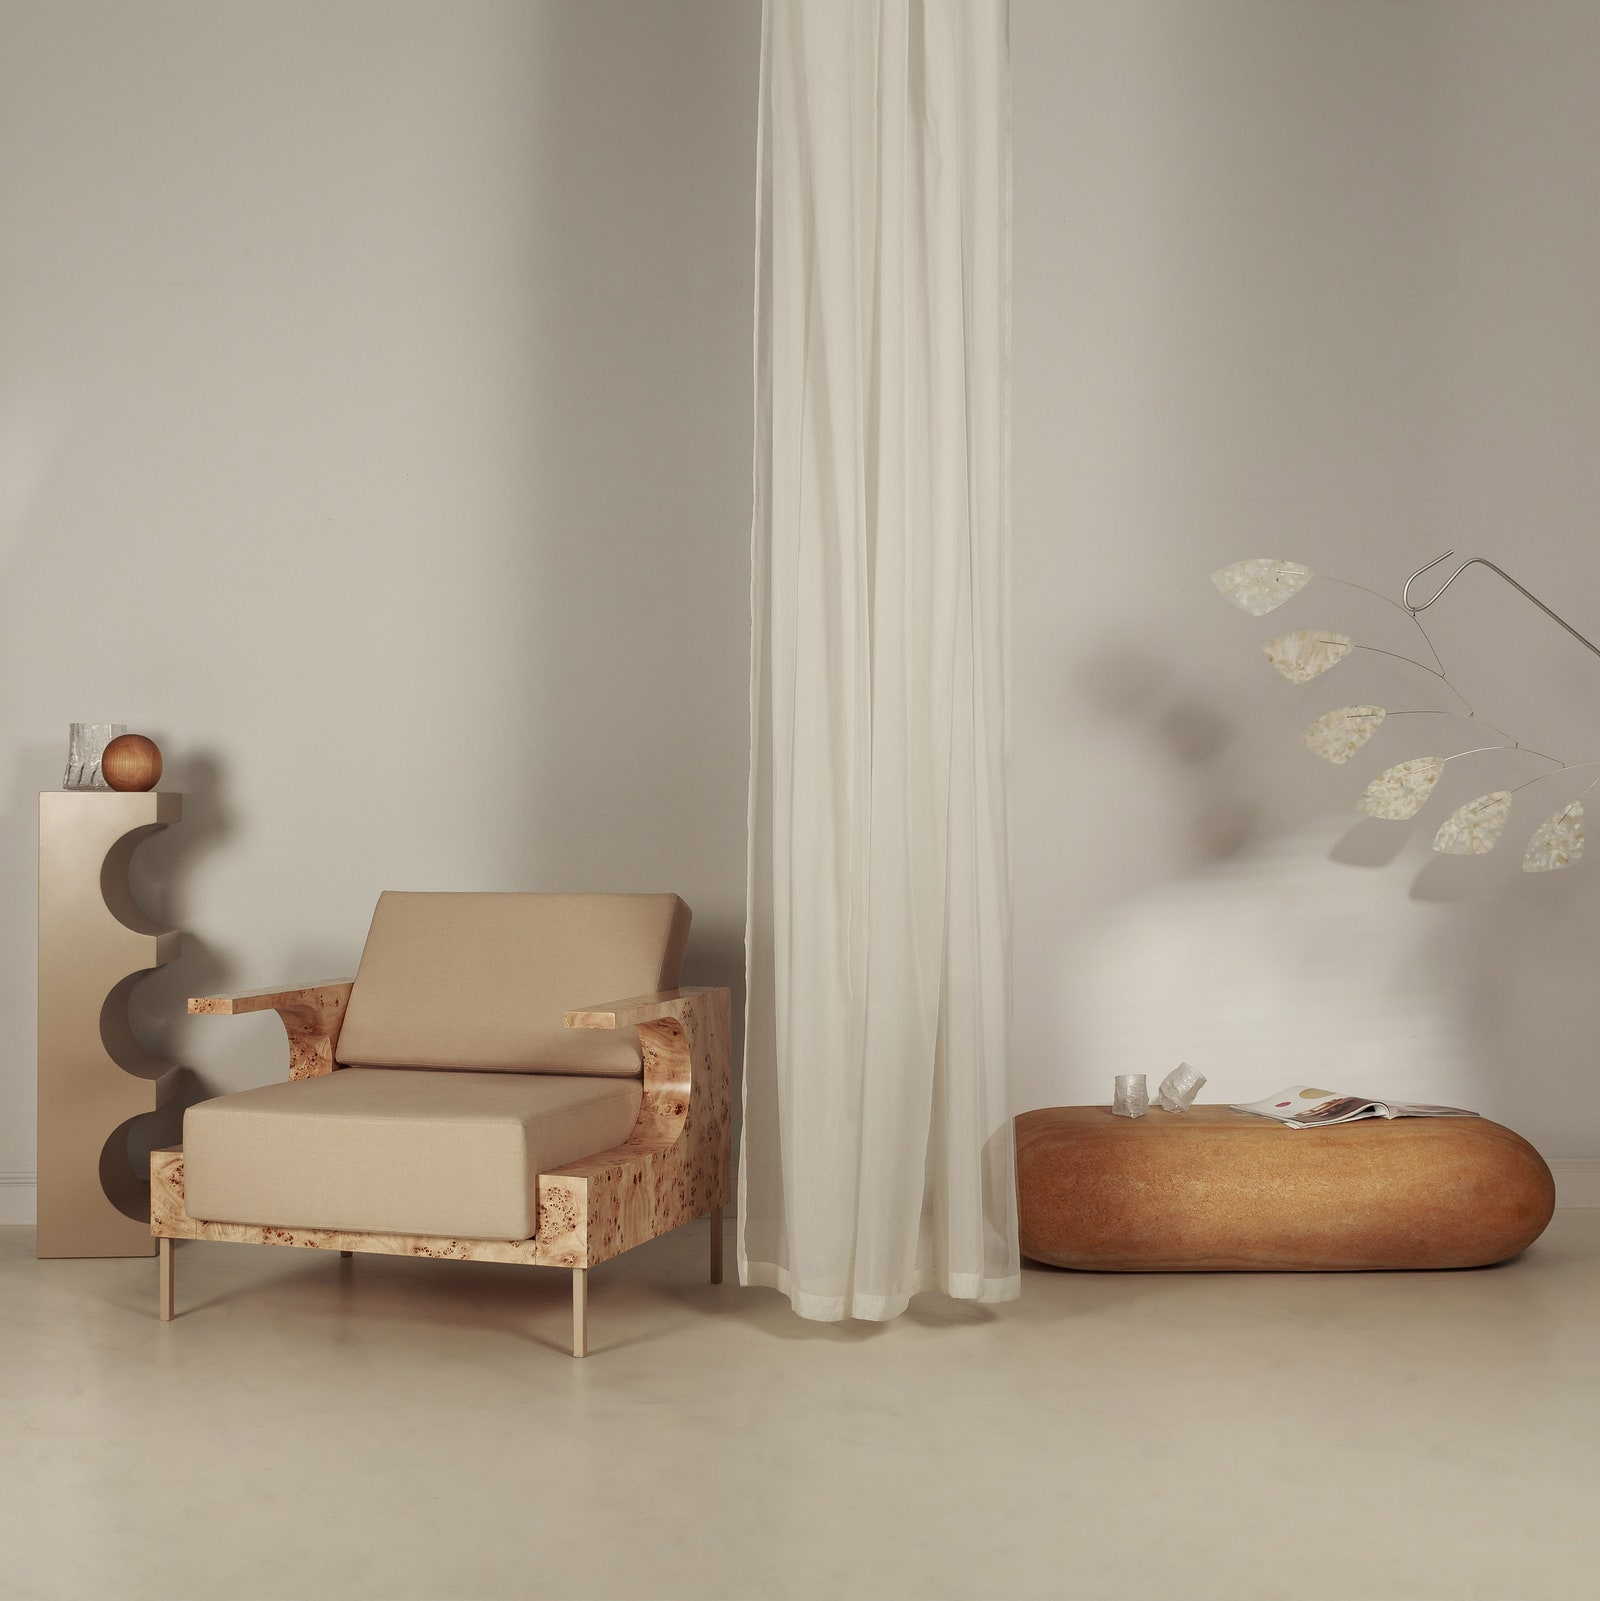 Первая коллекция мебели и декора от проекта “Палаты”